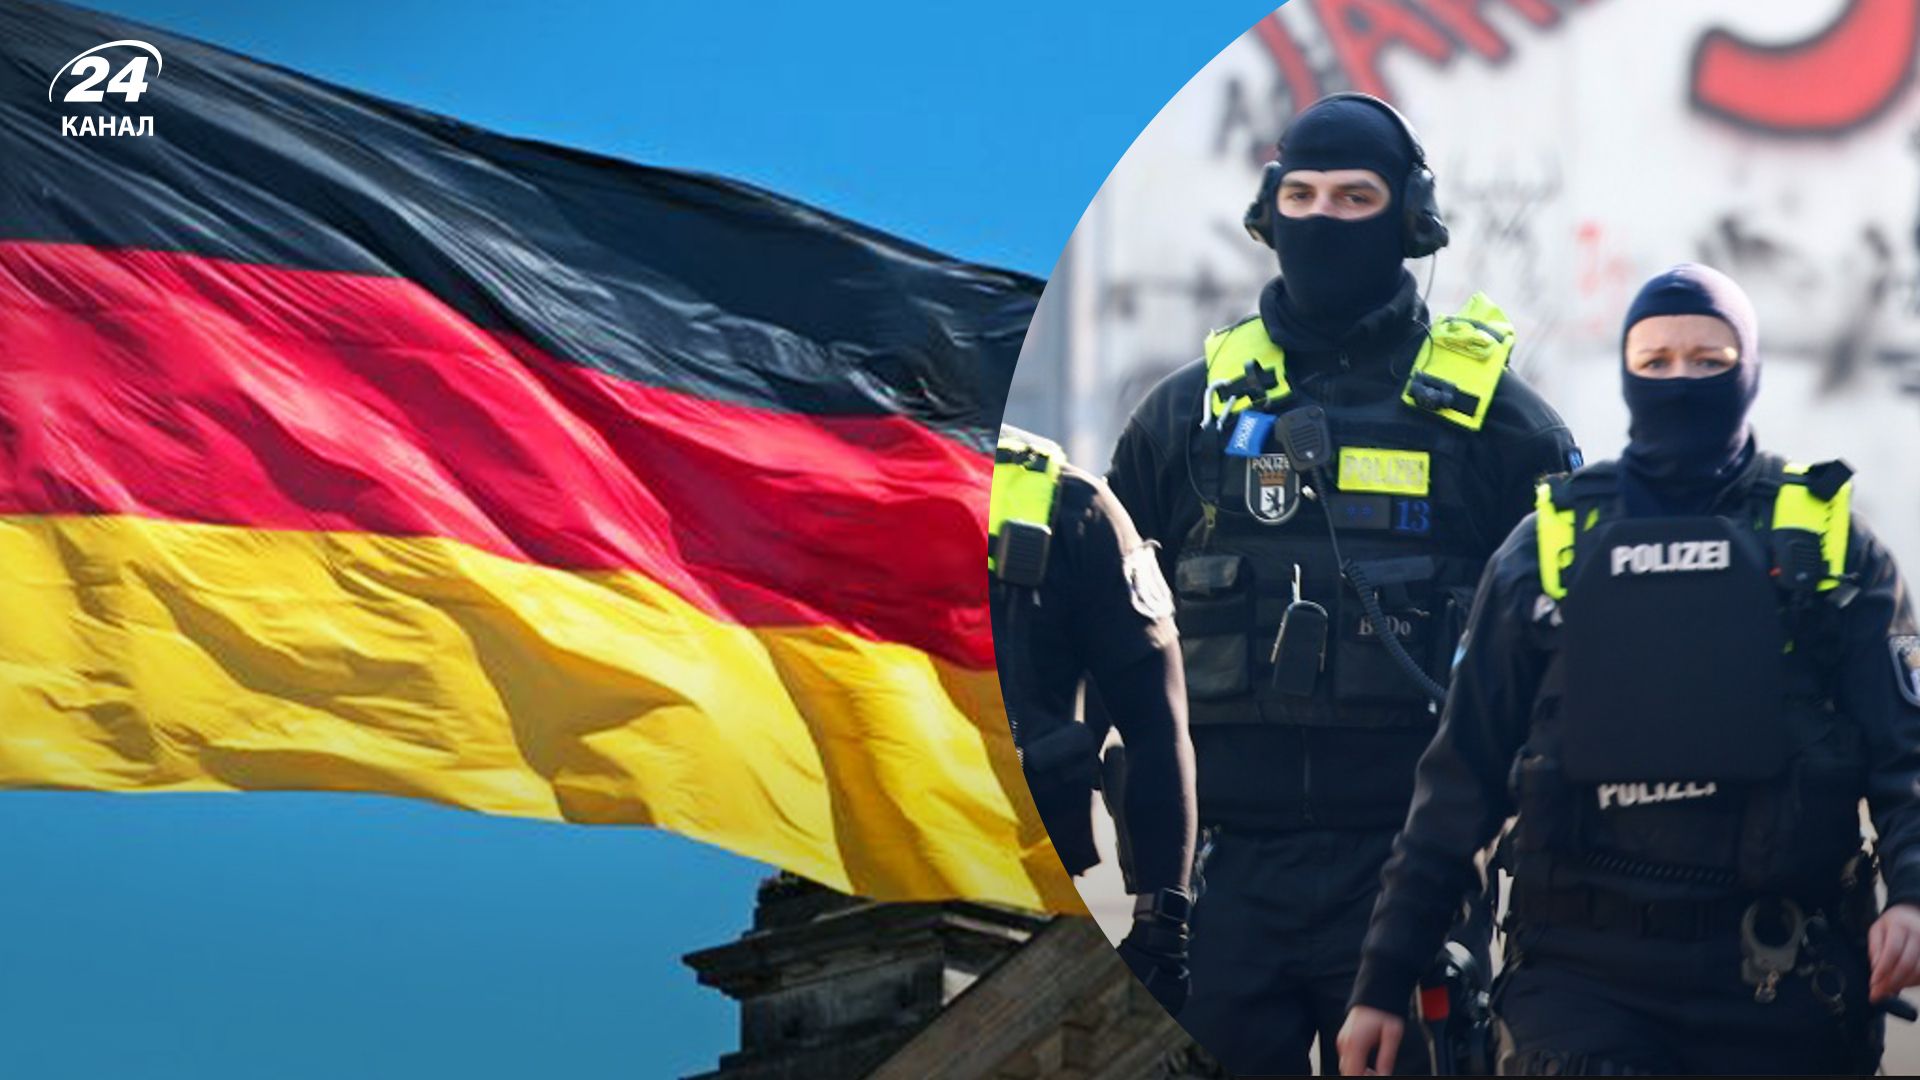 В Берлине 3 марта искали террористов "Фракции Красной армии"